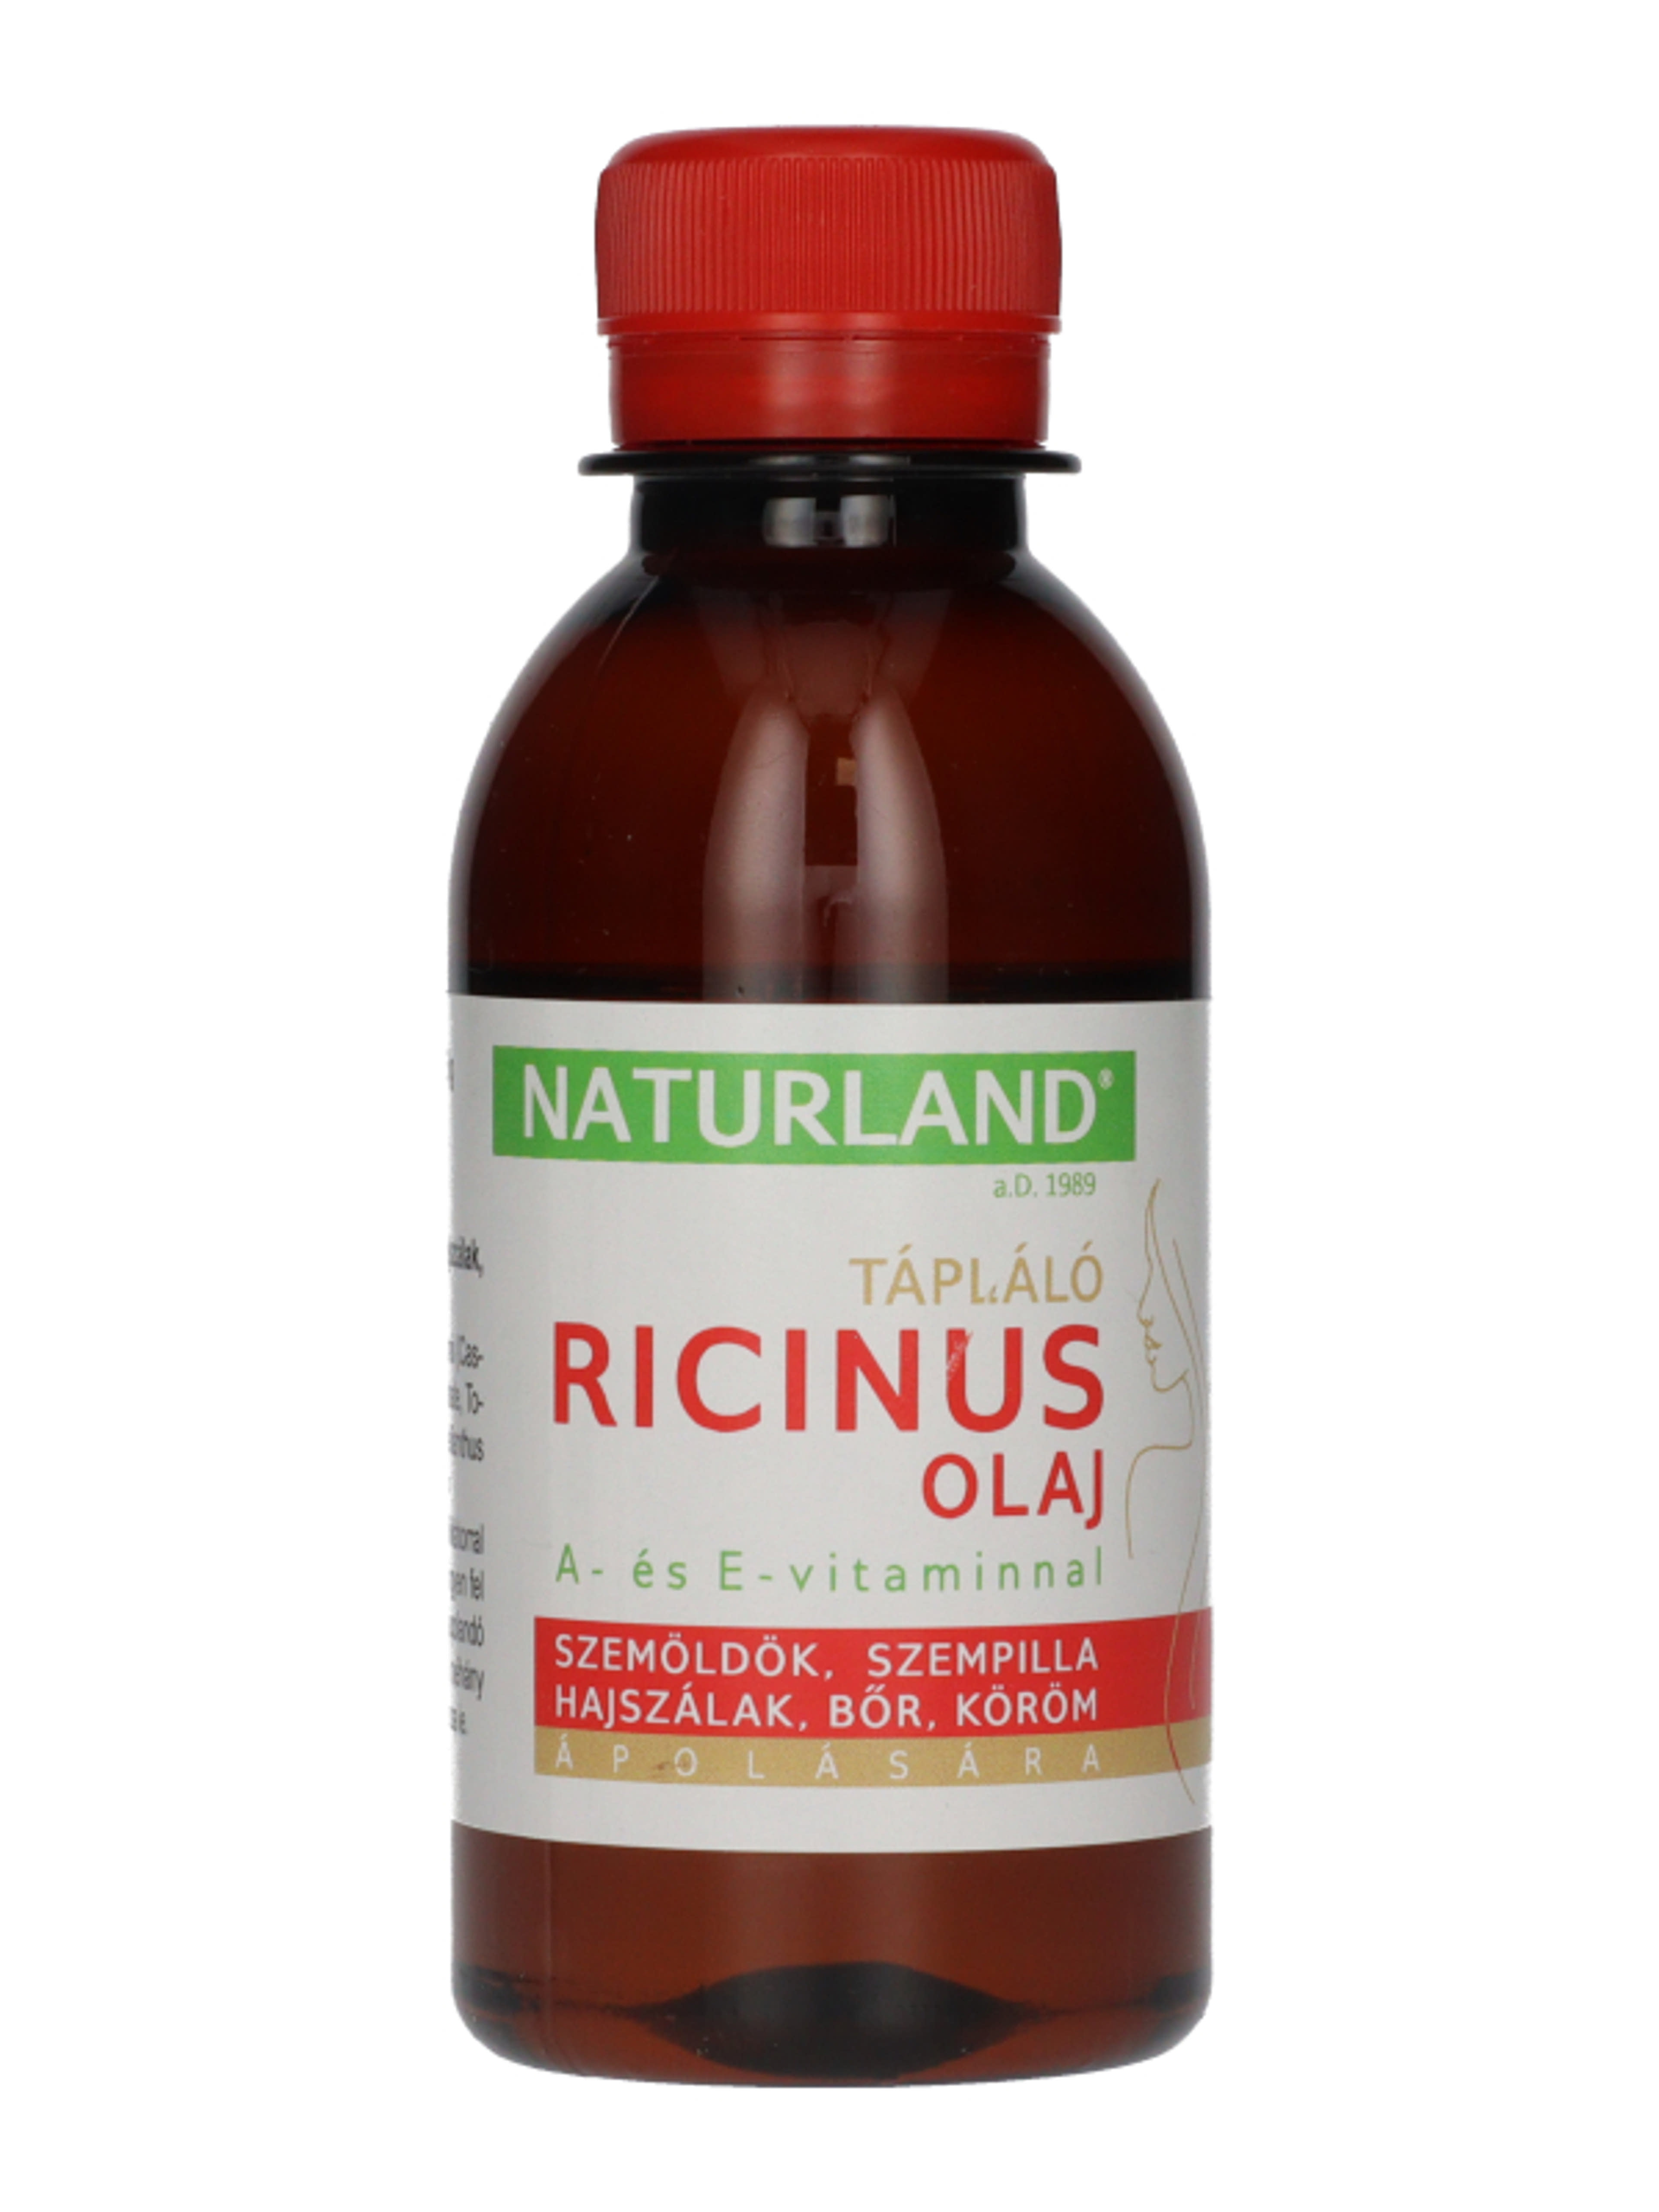 Naturland ricinus olaj - 120 g